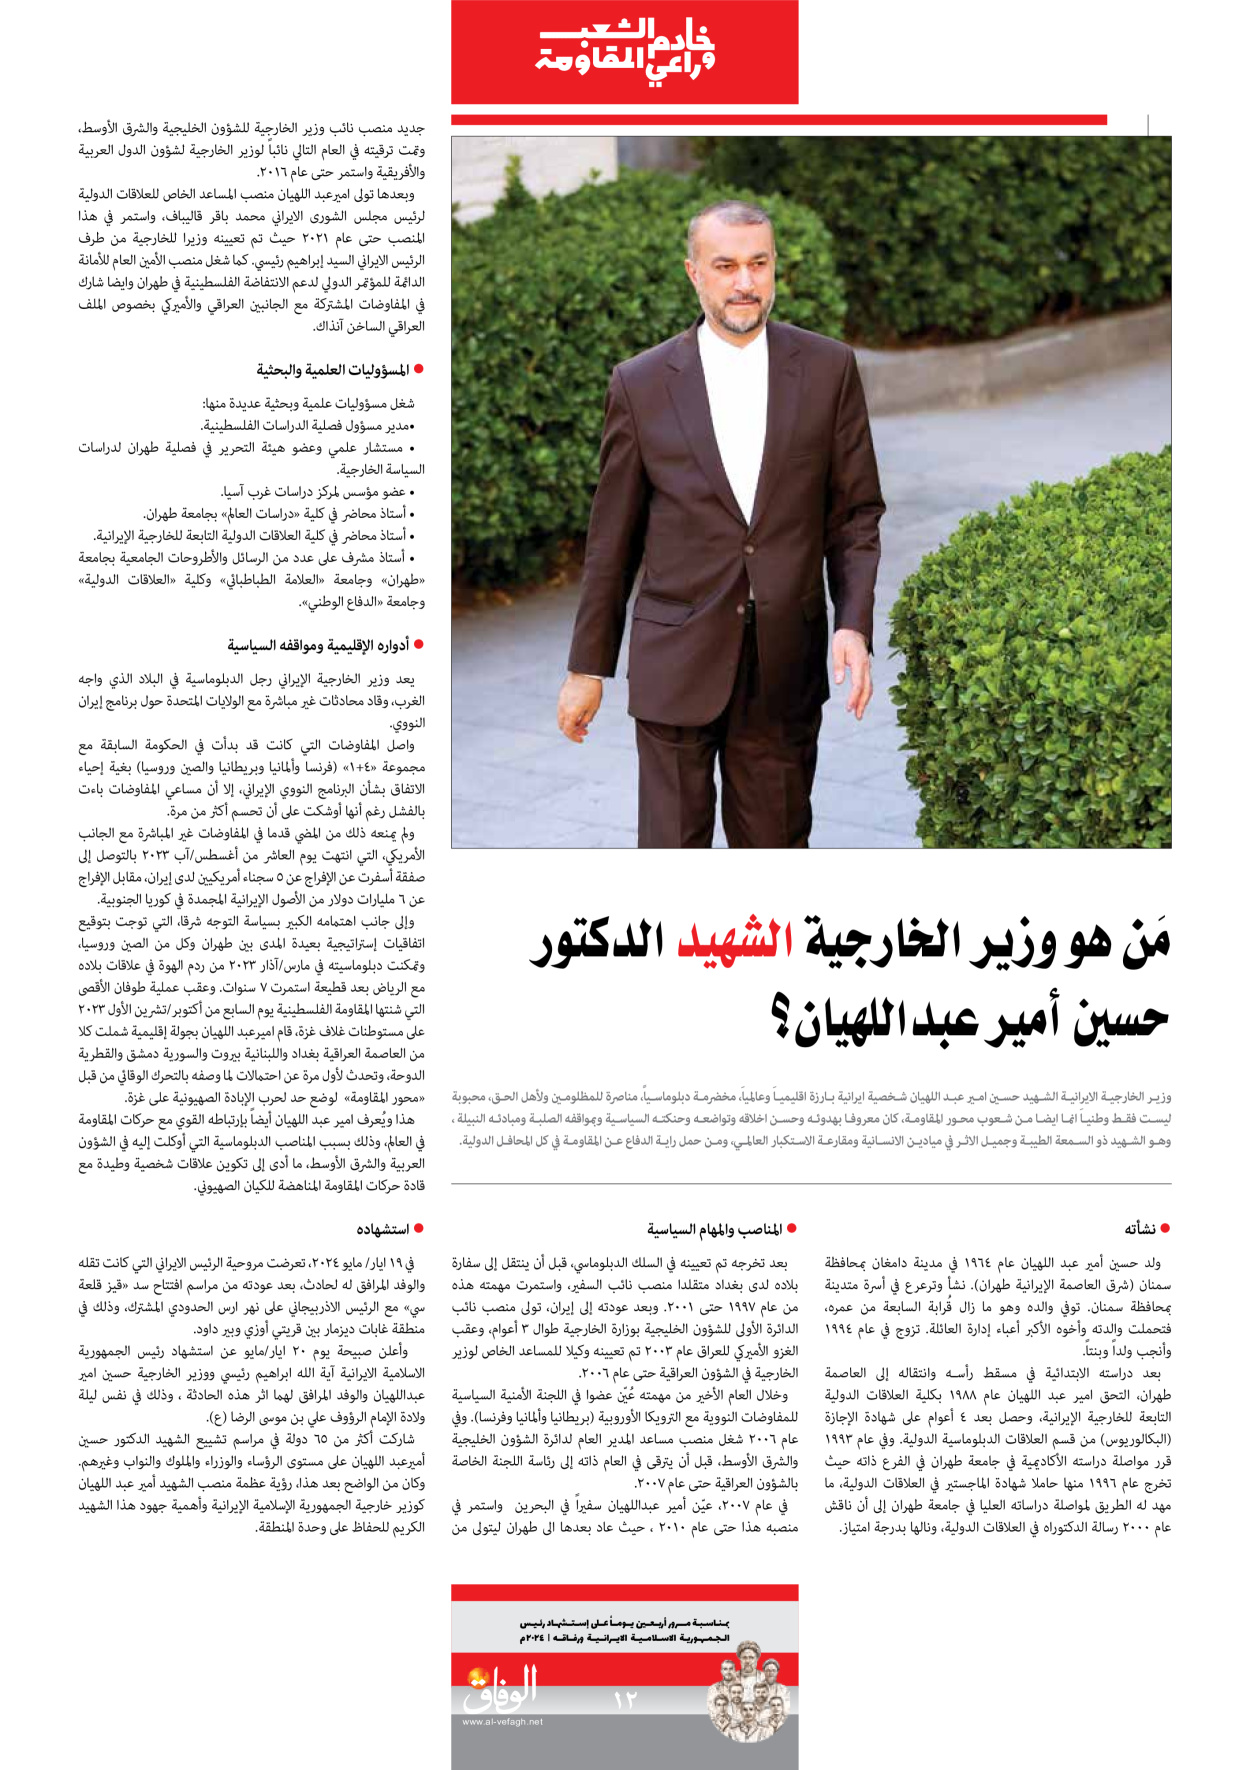 صحیفة ایران الدولیة الوفاق - ملحق ویژه نامه چهلم شهید رییسی - ٢٩ يونيو ٢٠٢٤ - الصفحة ۱۲